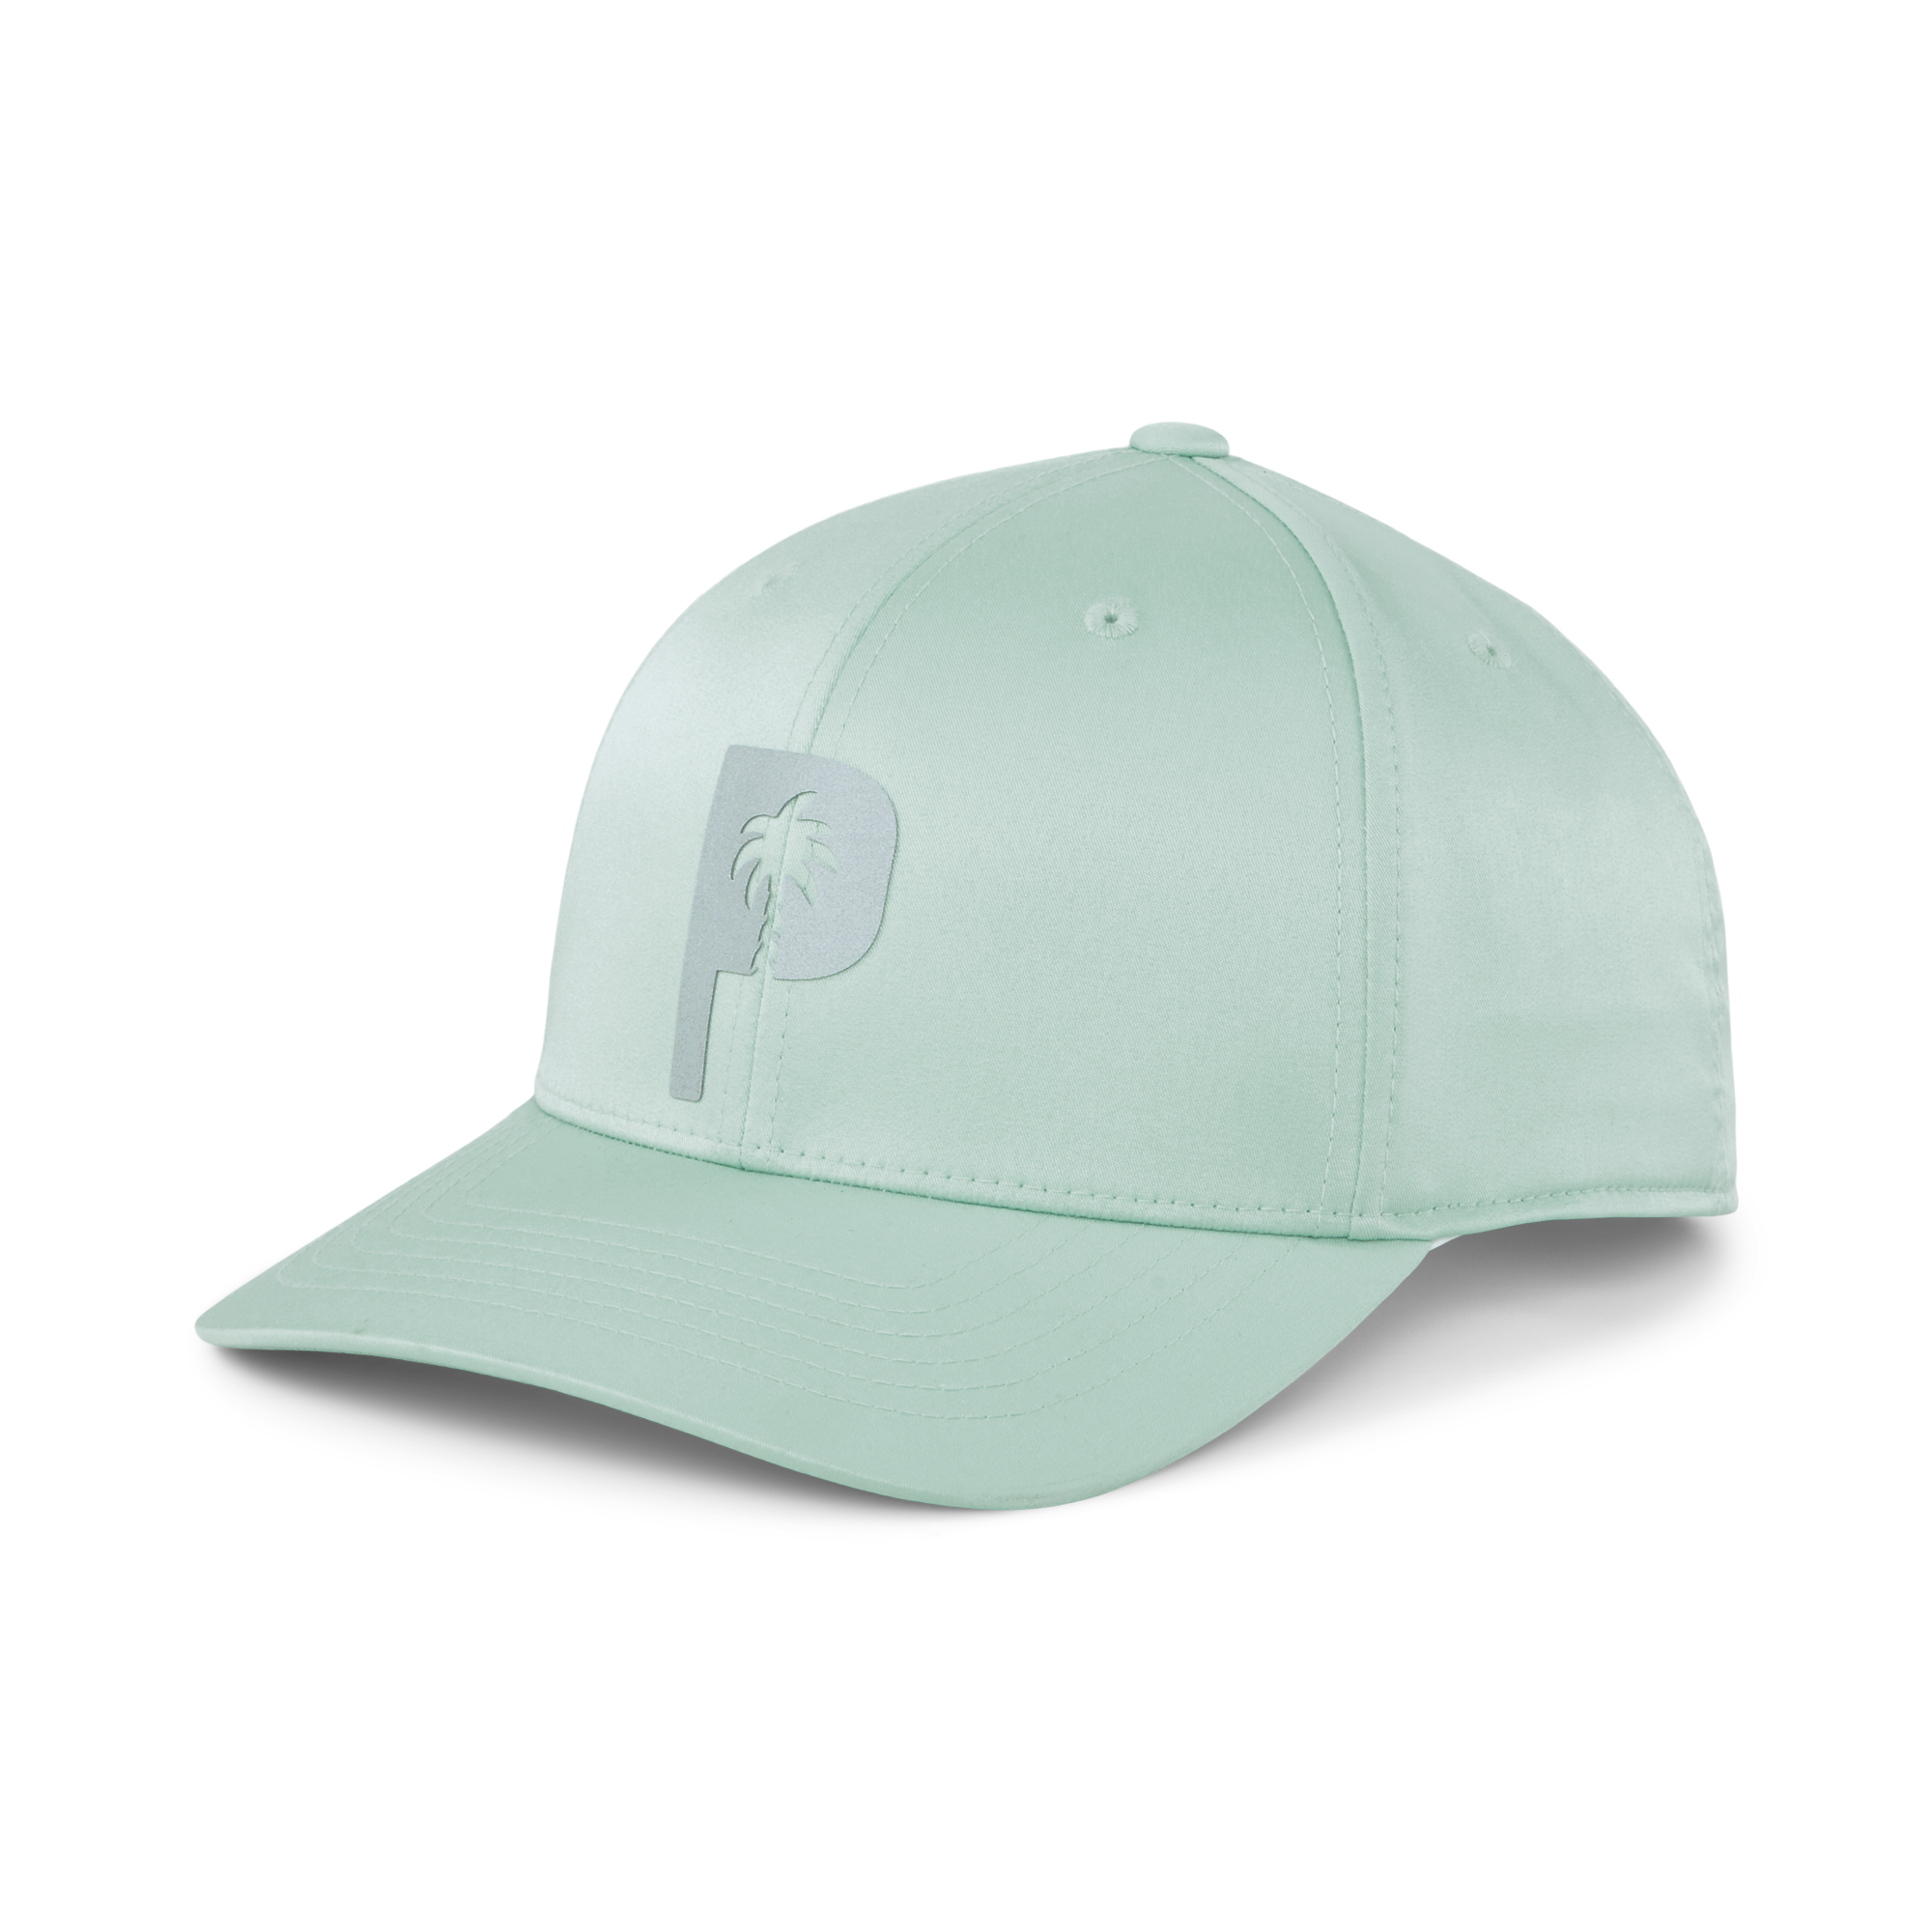 PUMA X PTC CAP - AQUA GREEN